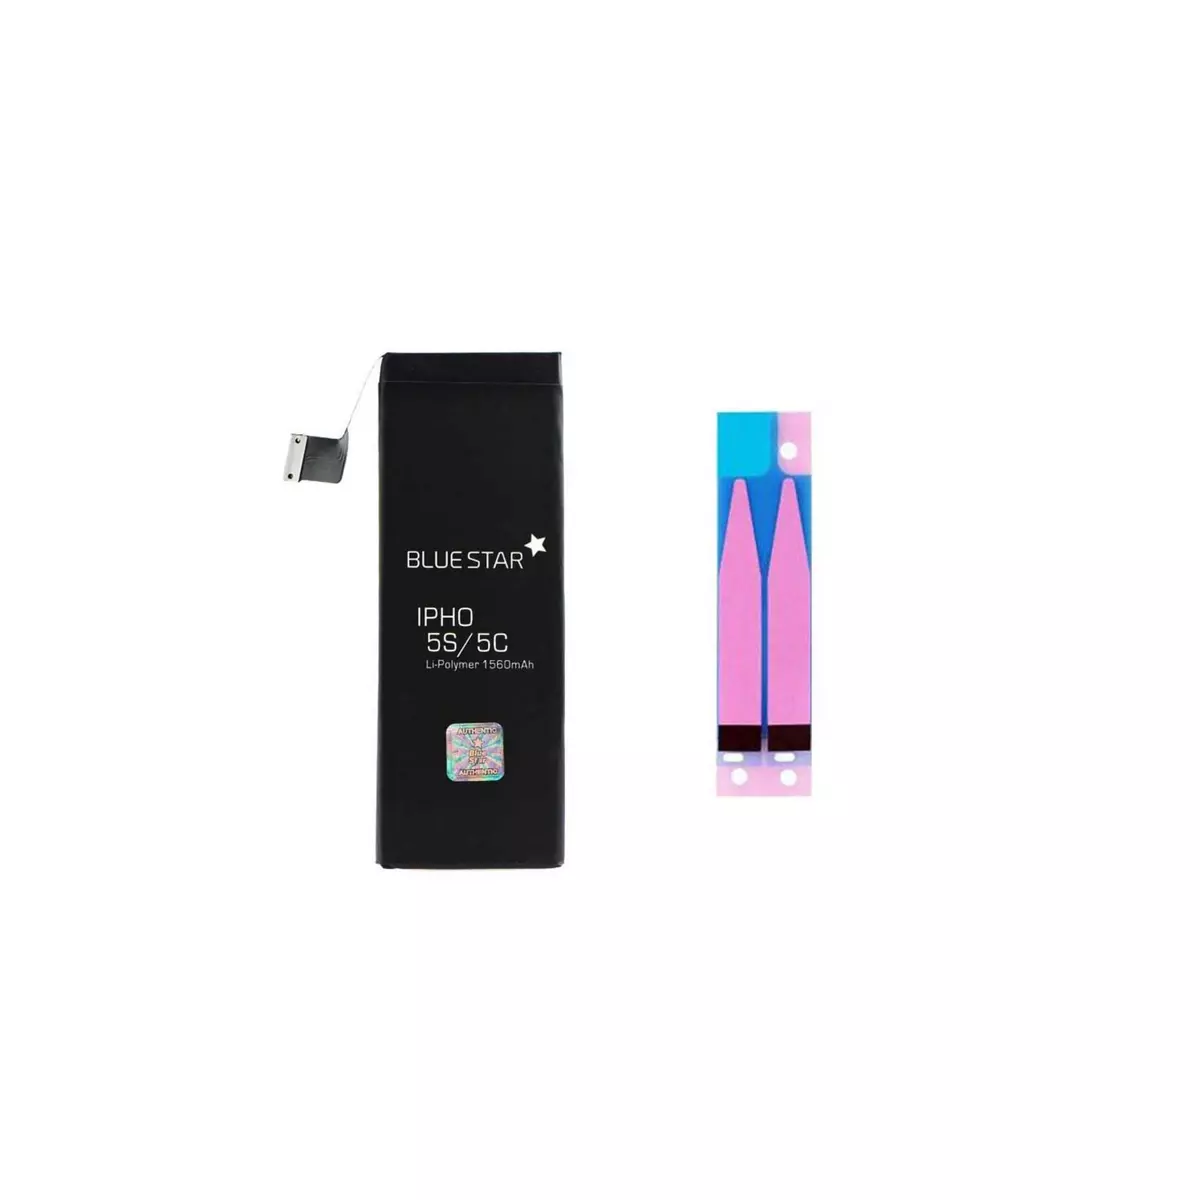 amahousse Batterie compatible iPhone 5S 5C 3,8V 1560mAh + 1 sticker